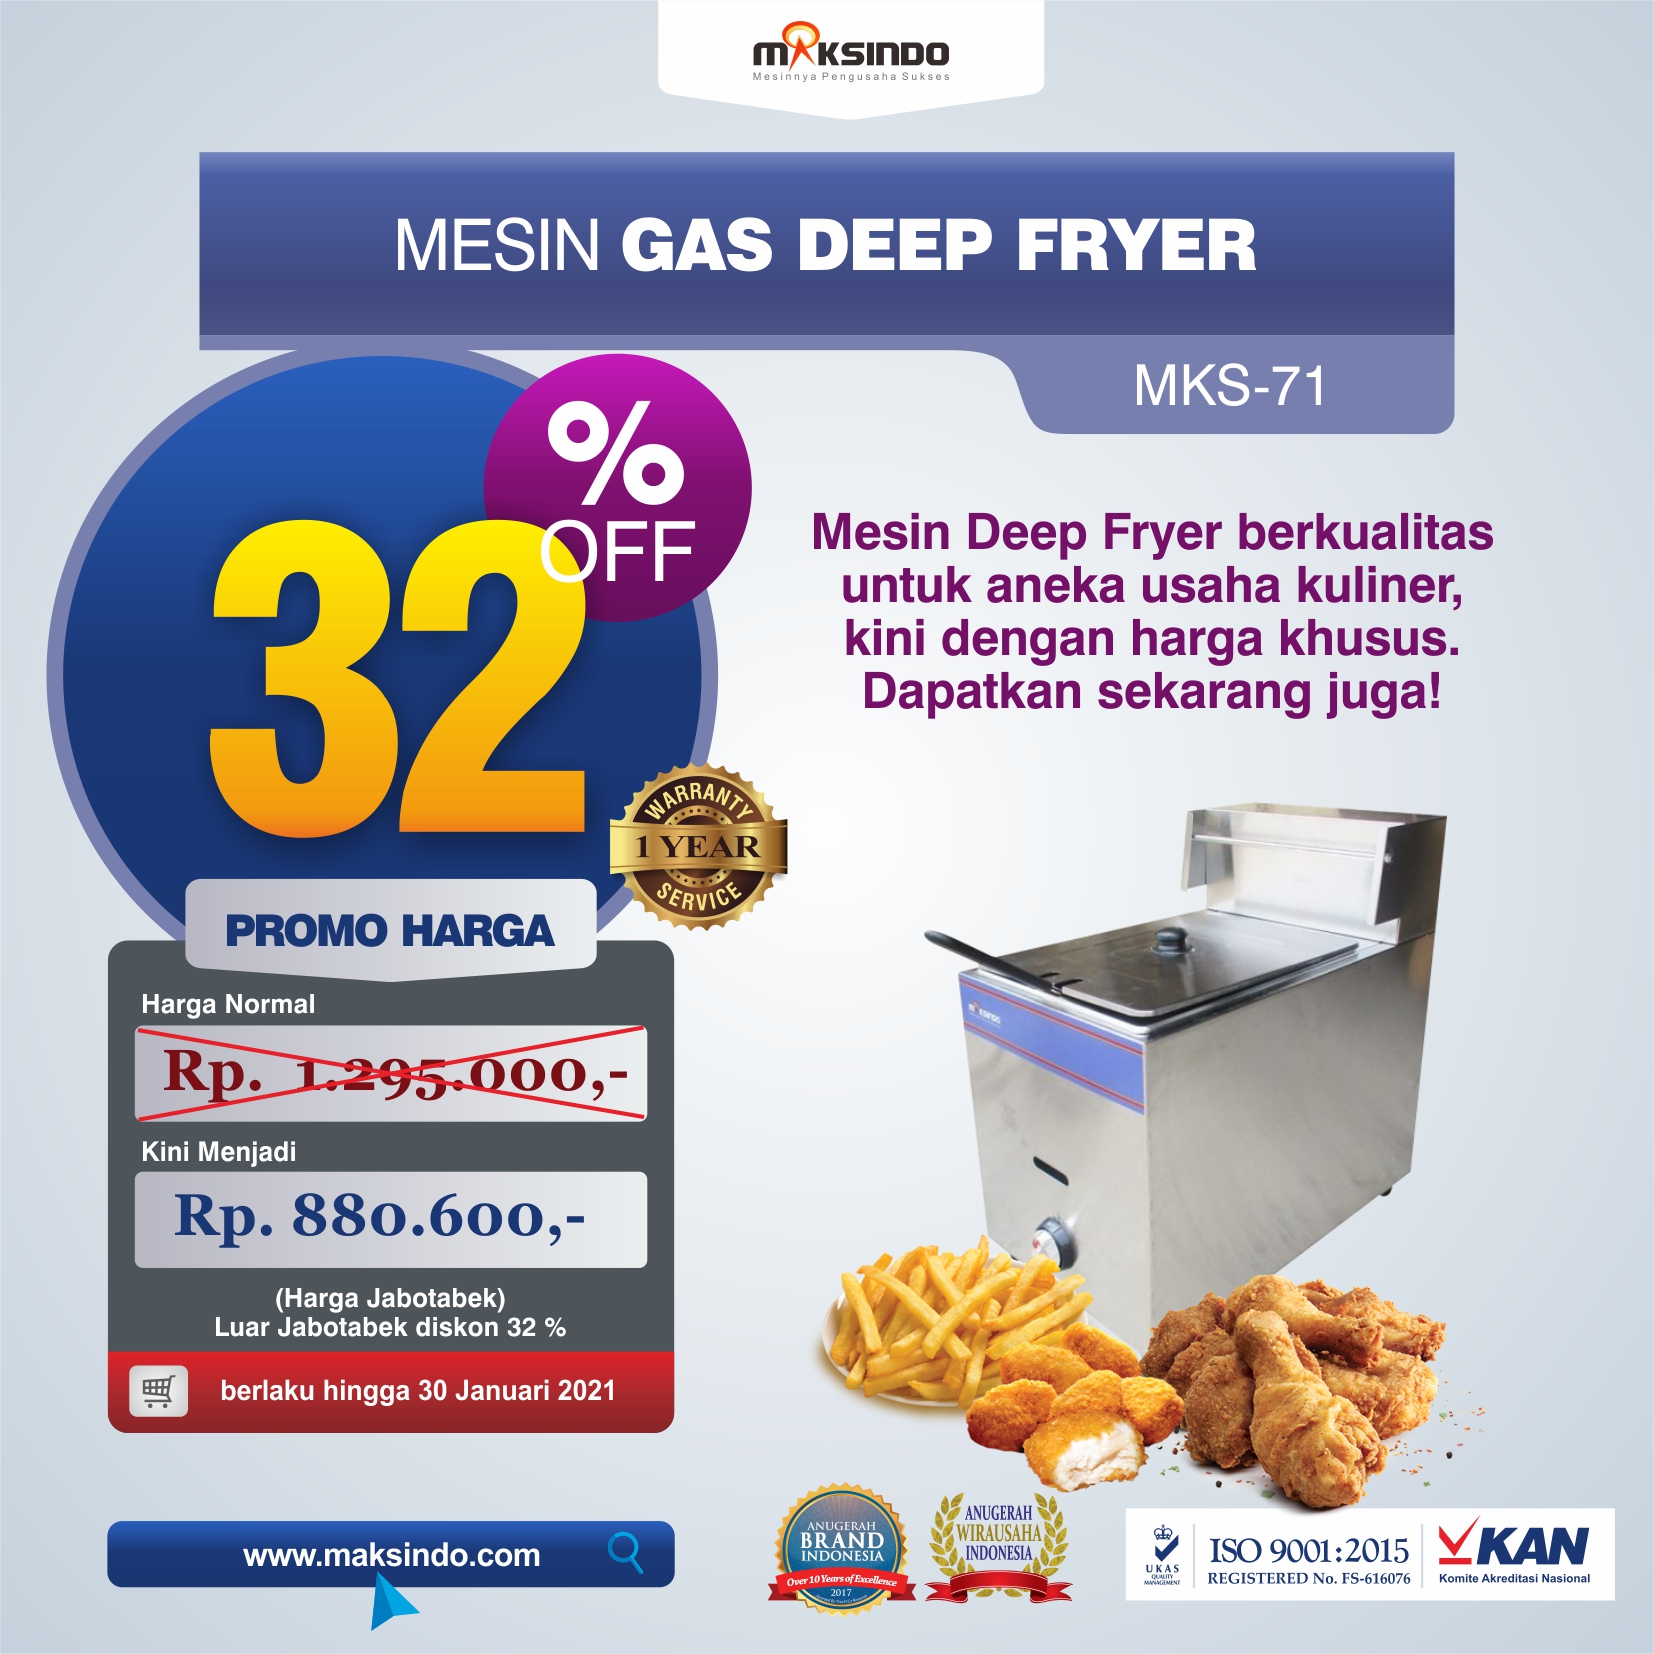 Jual Mesin Gas Deep Fryer MKS-71 di Semarang